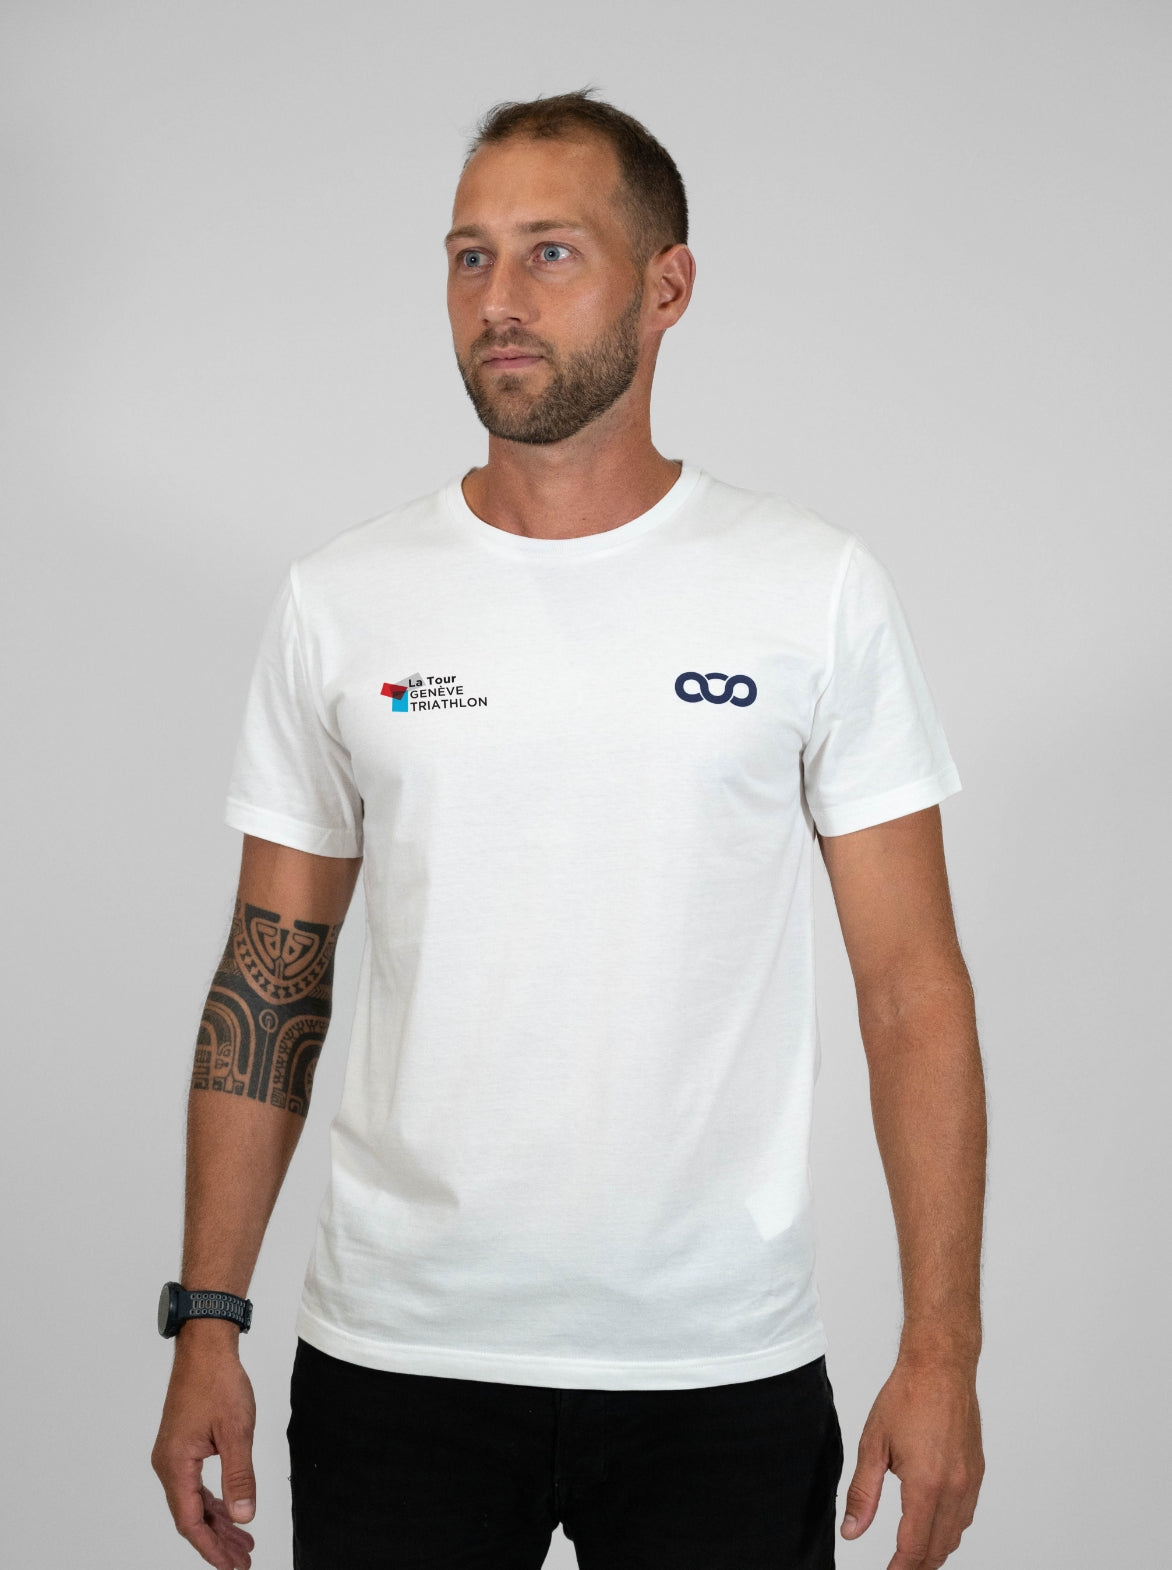 T-shirt coton Homme Made in France et Bio — La Tour Genève Triathlon